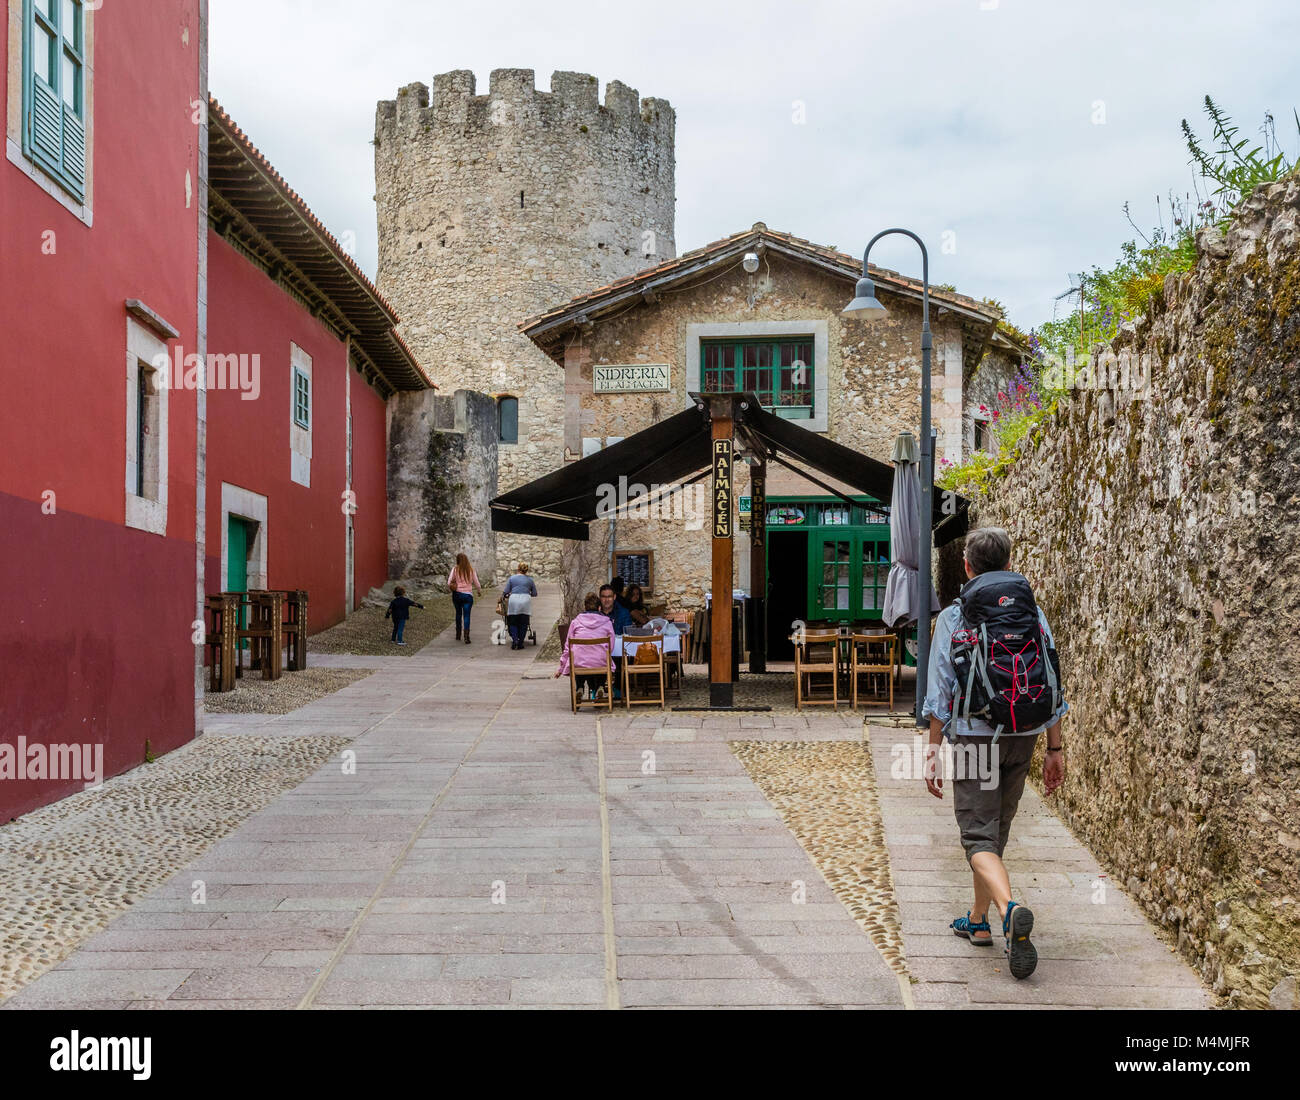 Donna con zaino in cammino verso una Sidreria o Cider house e il castello nella città di Llanes nelle Asturie spagna settentrionale Foto Stock